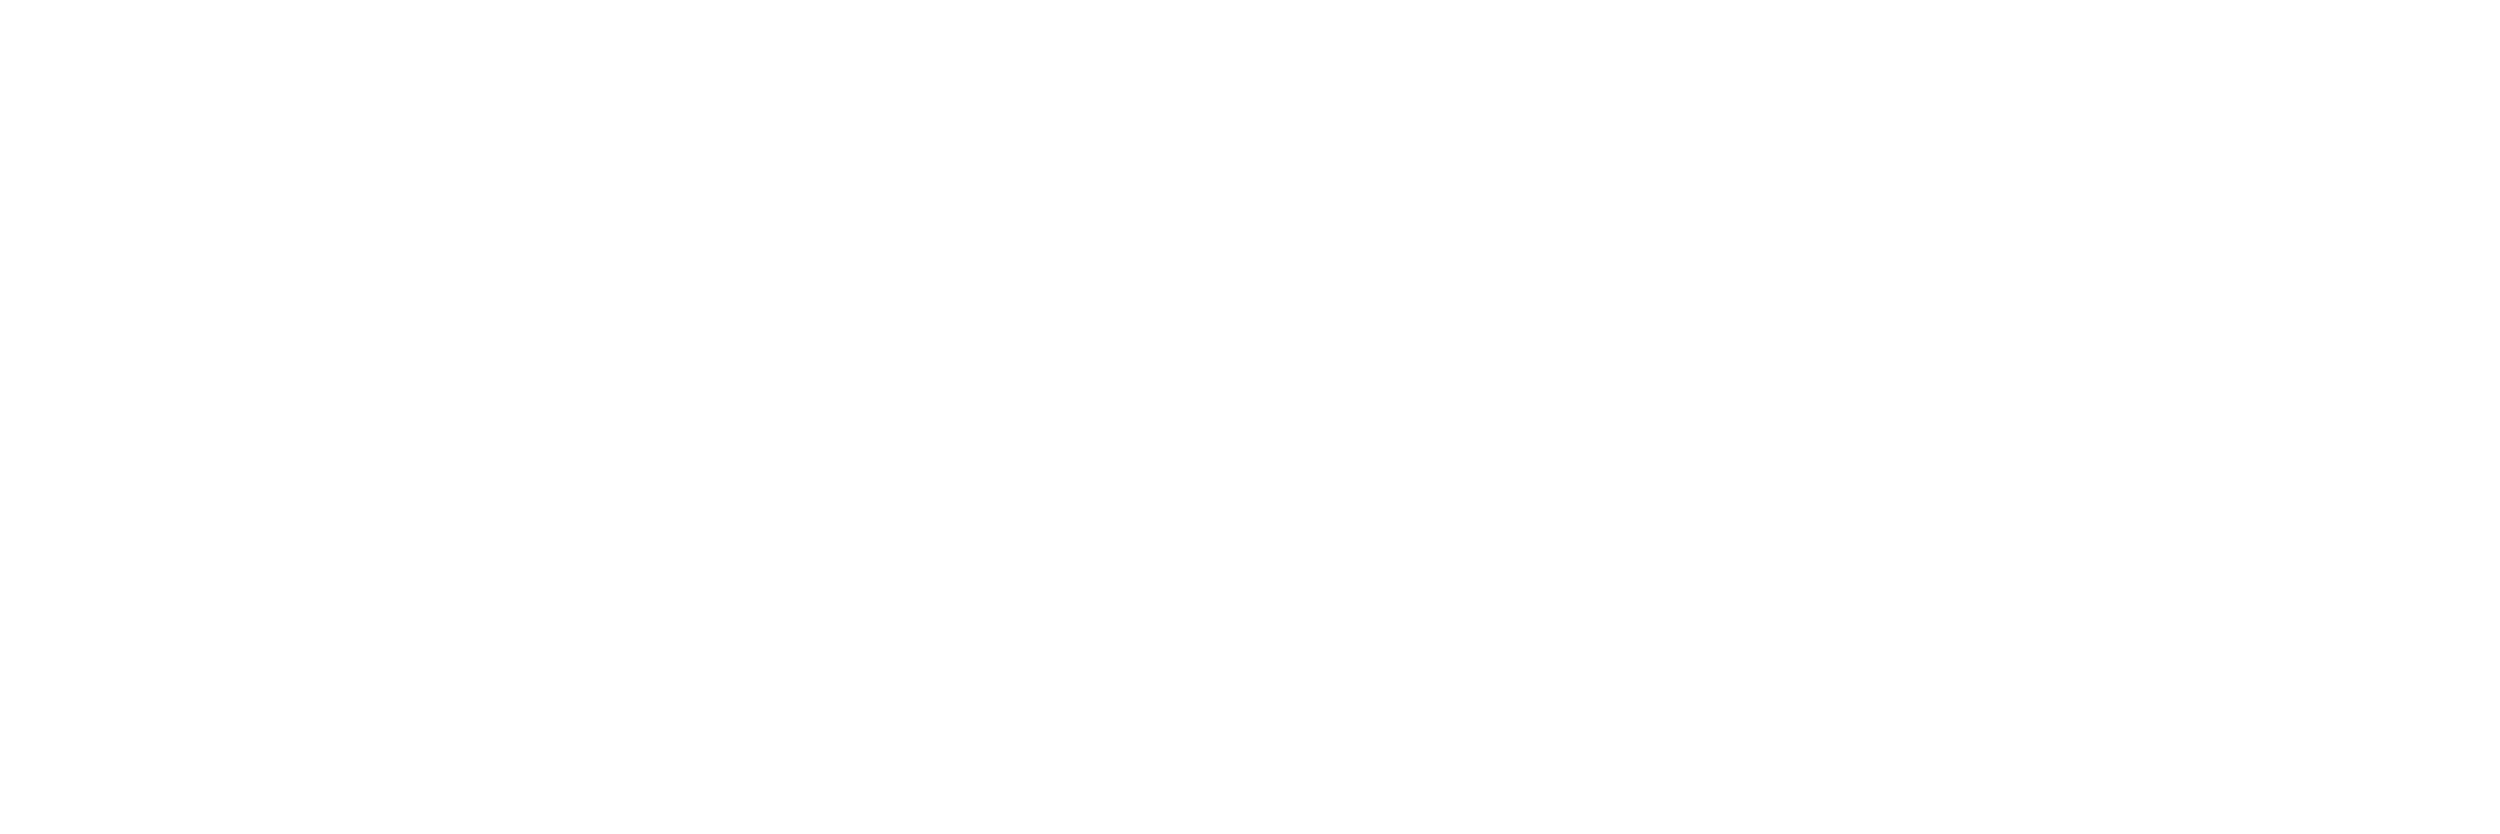 Mark-Taylor Companies